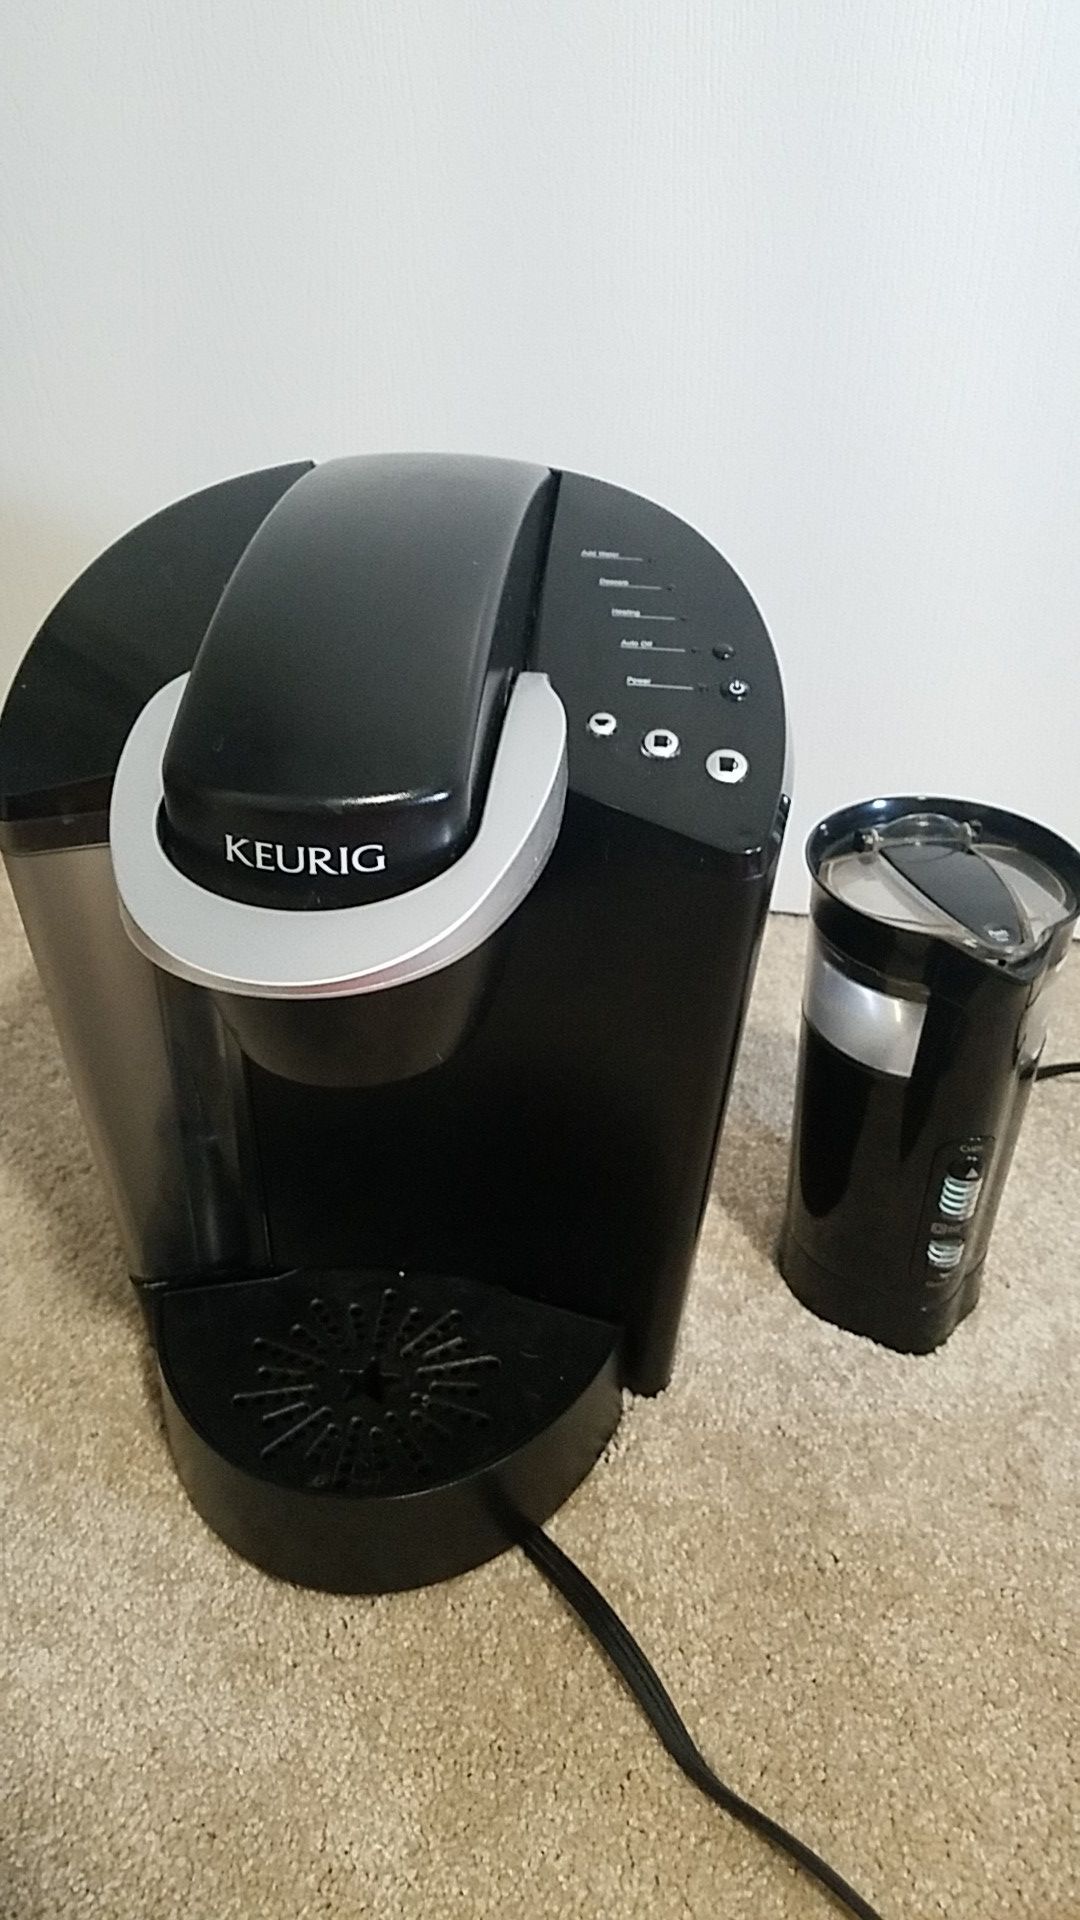 Keurig and coffee grinder